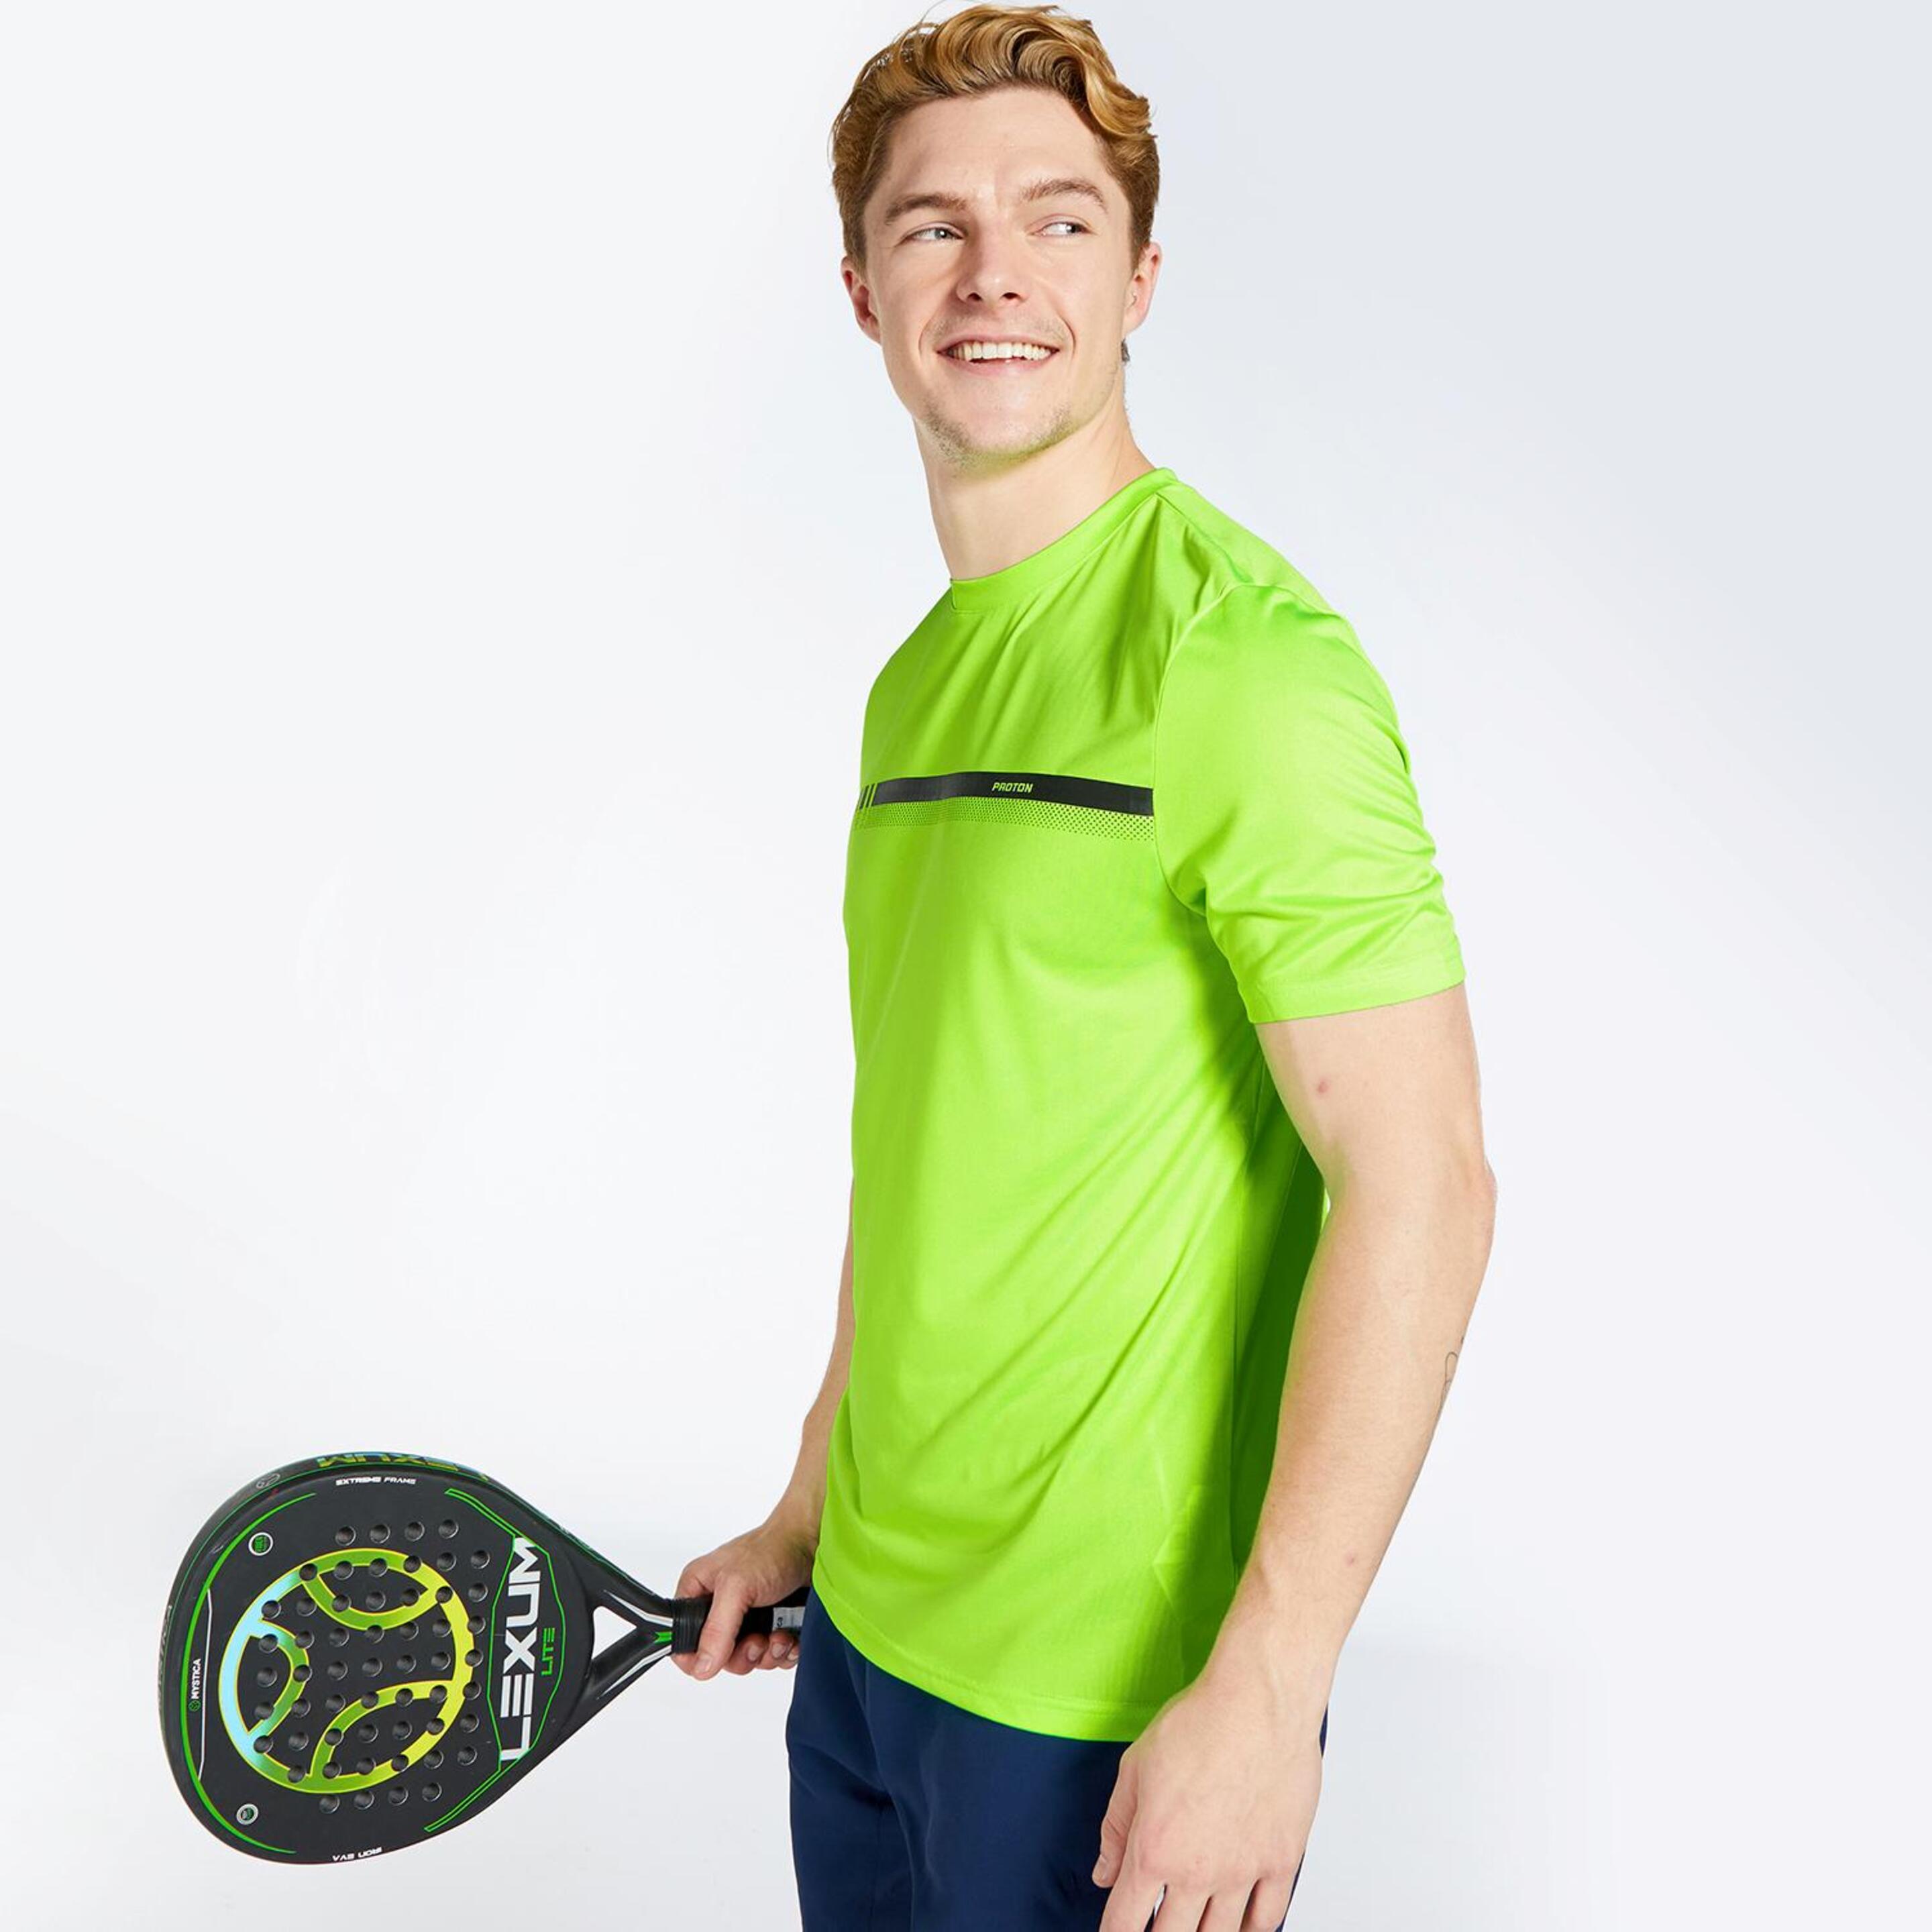 Proton Basic - Lima - Camiseta Tenis Hombre